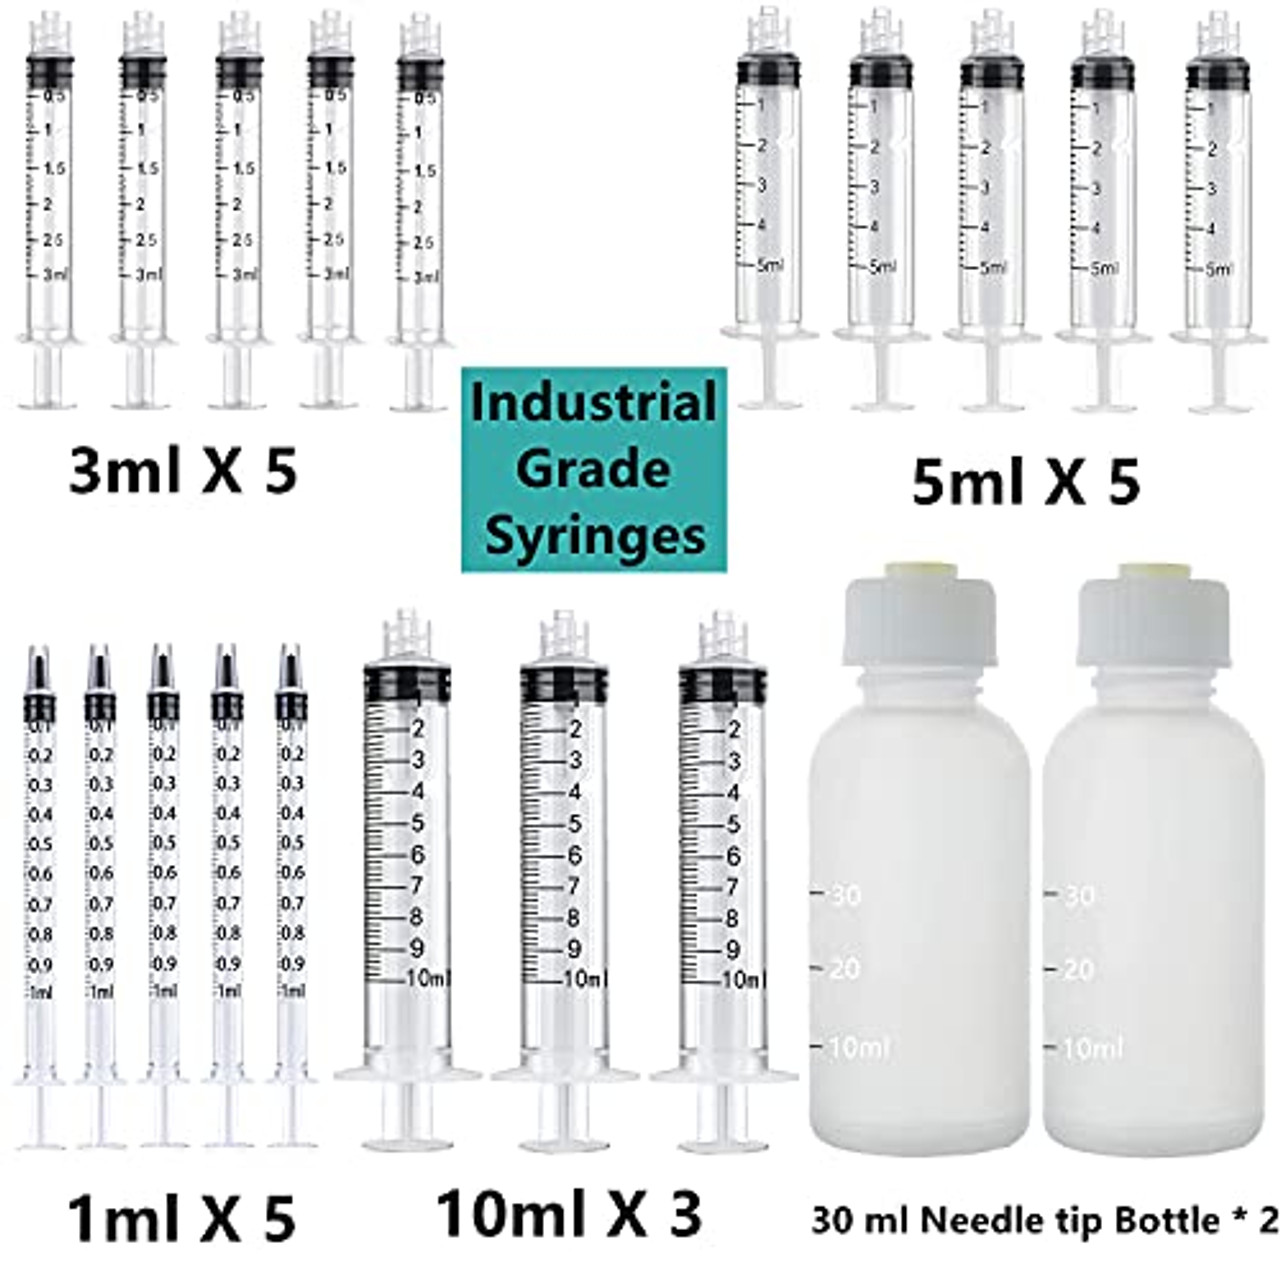 Glue Bottles, Glue Applicators or Glue Injector-Injectors and Applicators